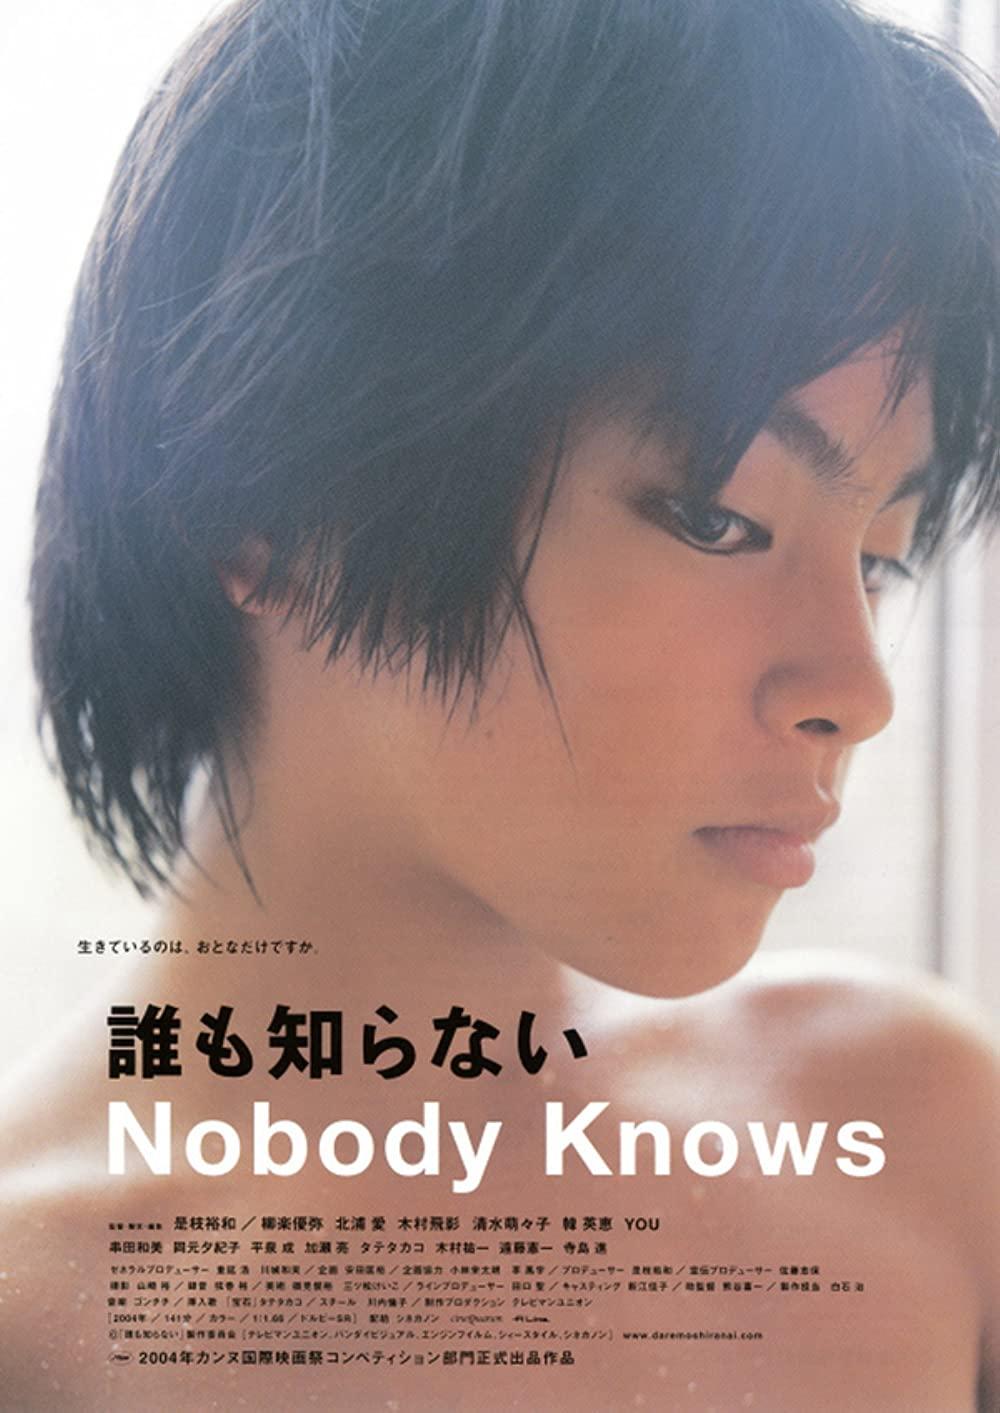 هیچکس نمی داند